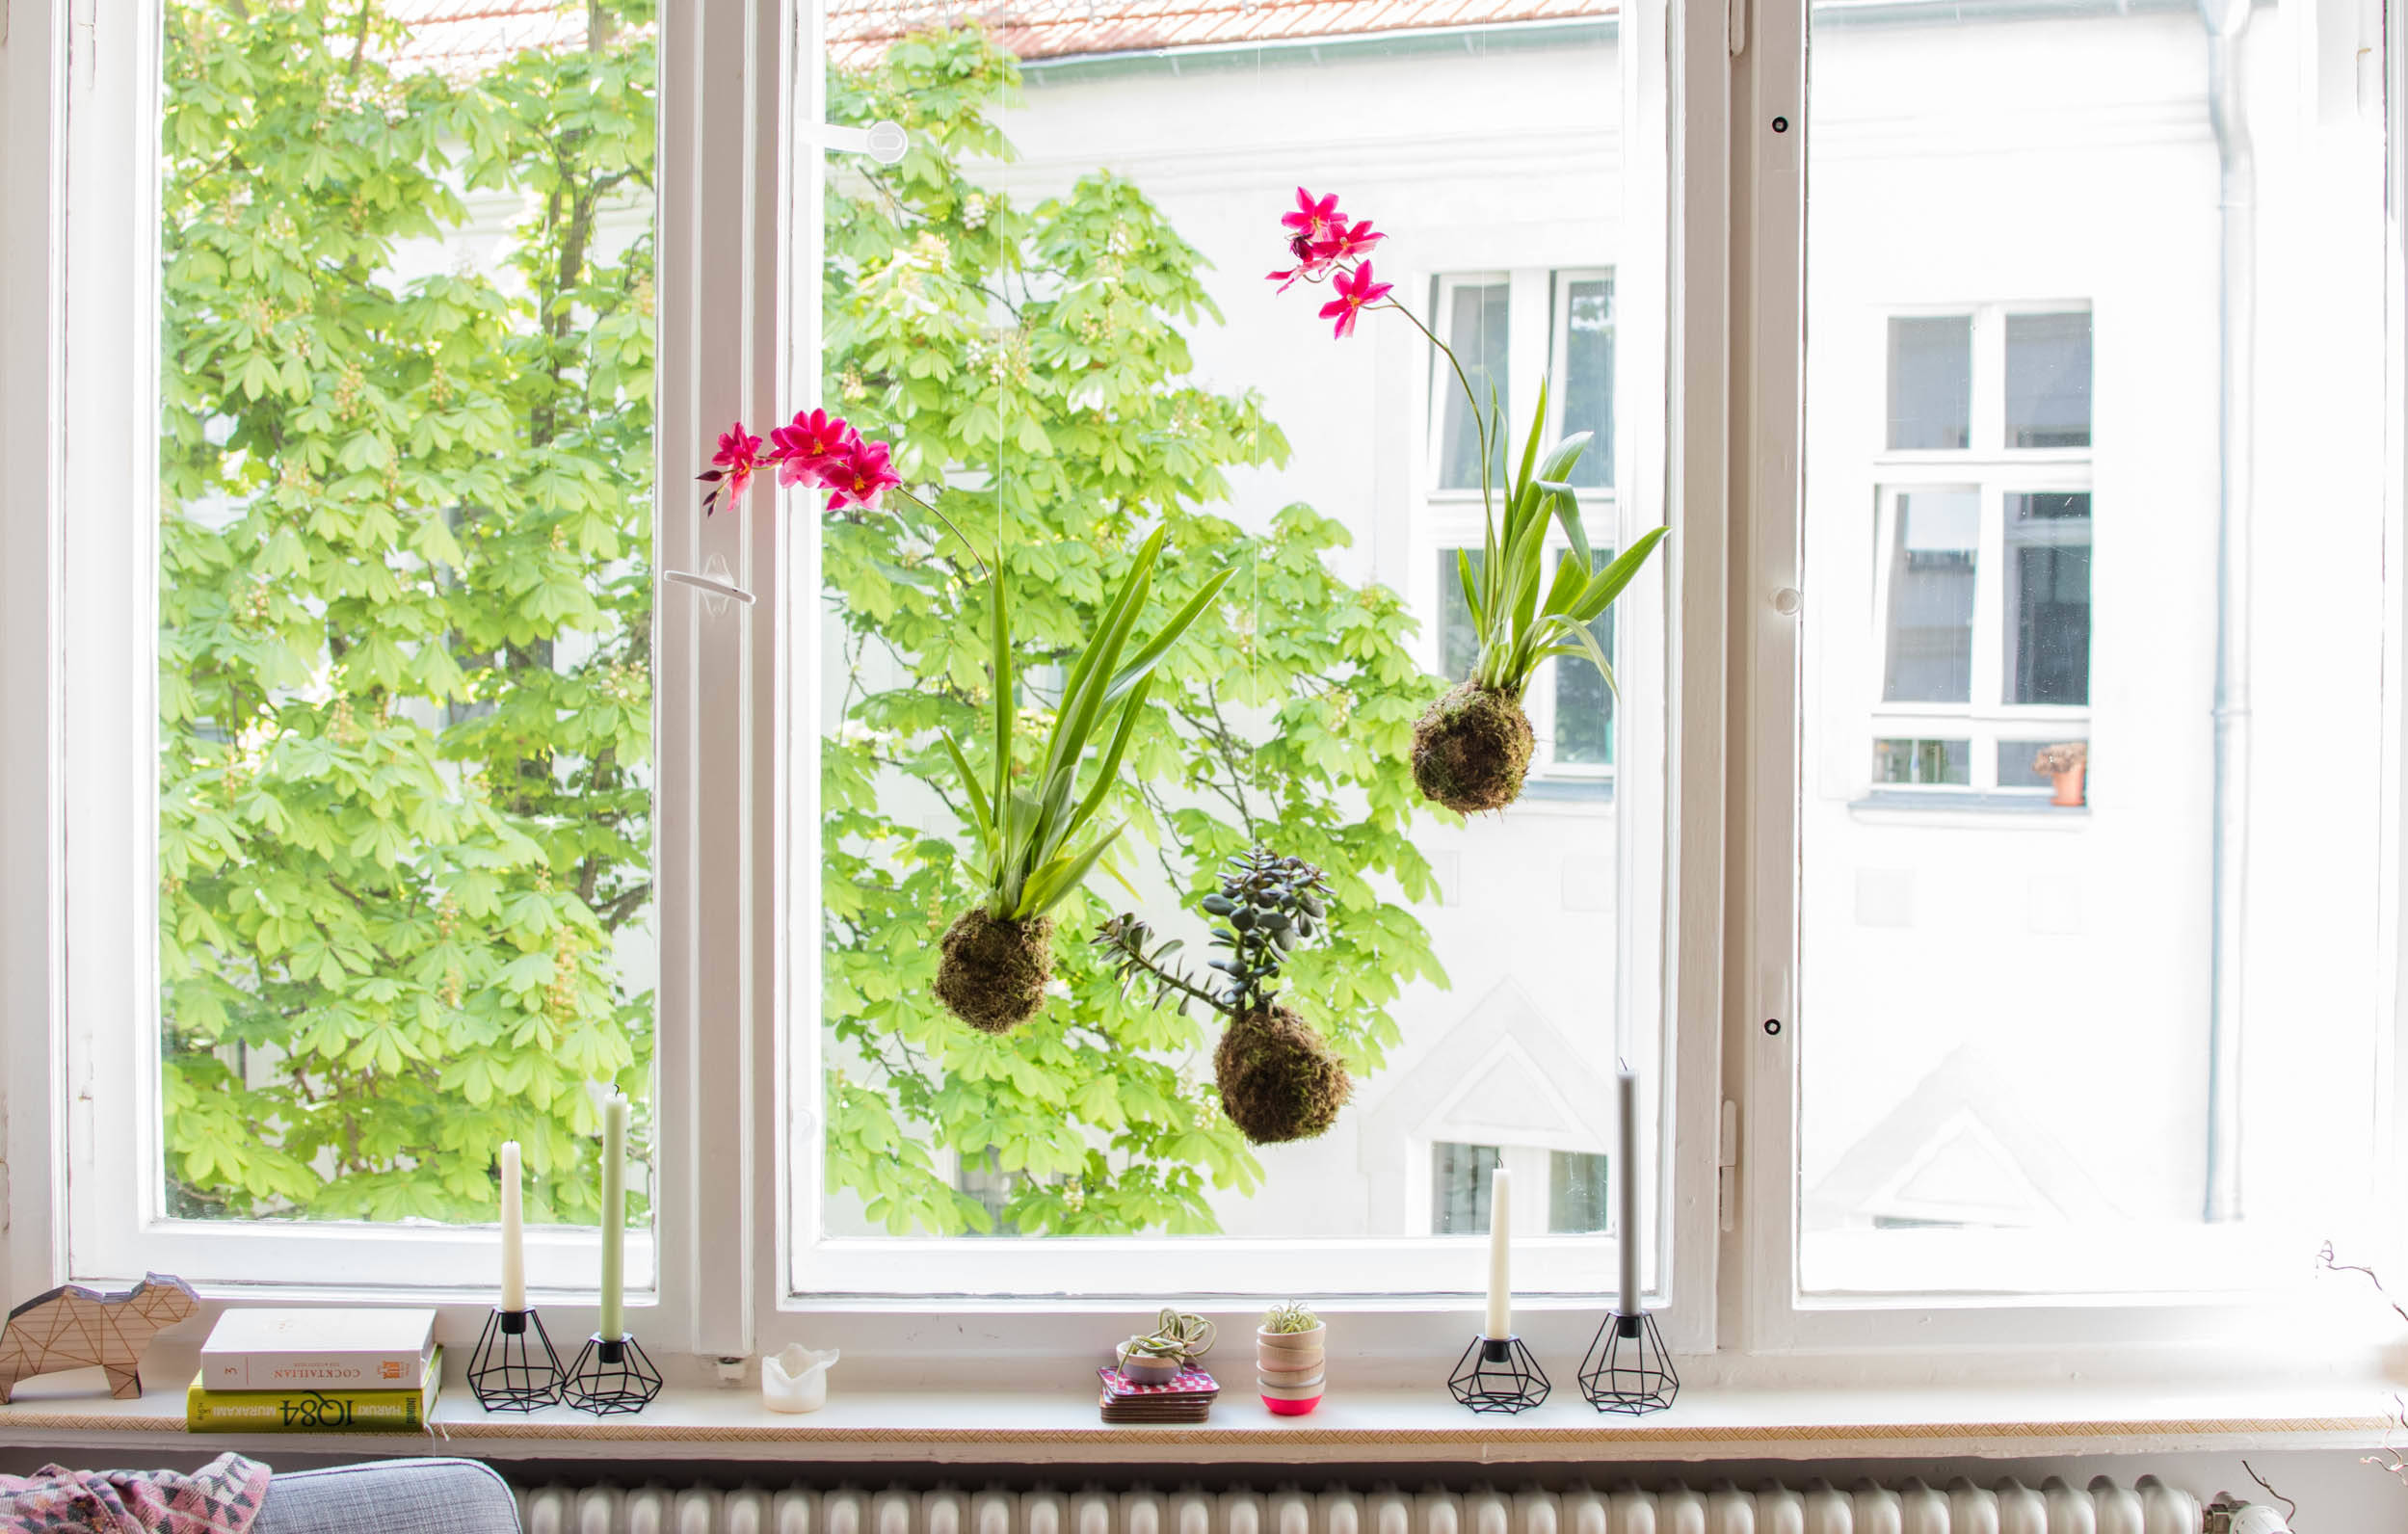 Цветы на подоконнике: 12 идей, как расставить их по правилам декора идеи для дома,комнатные растения